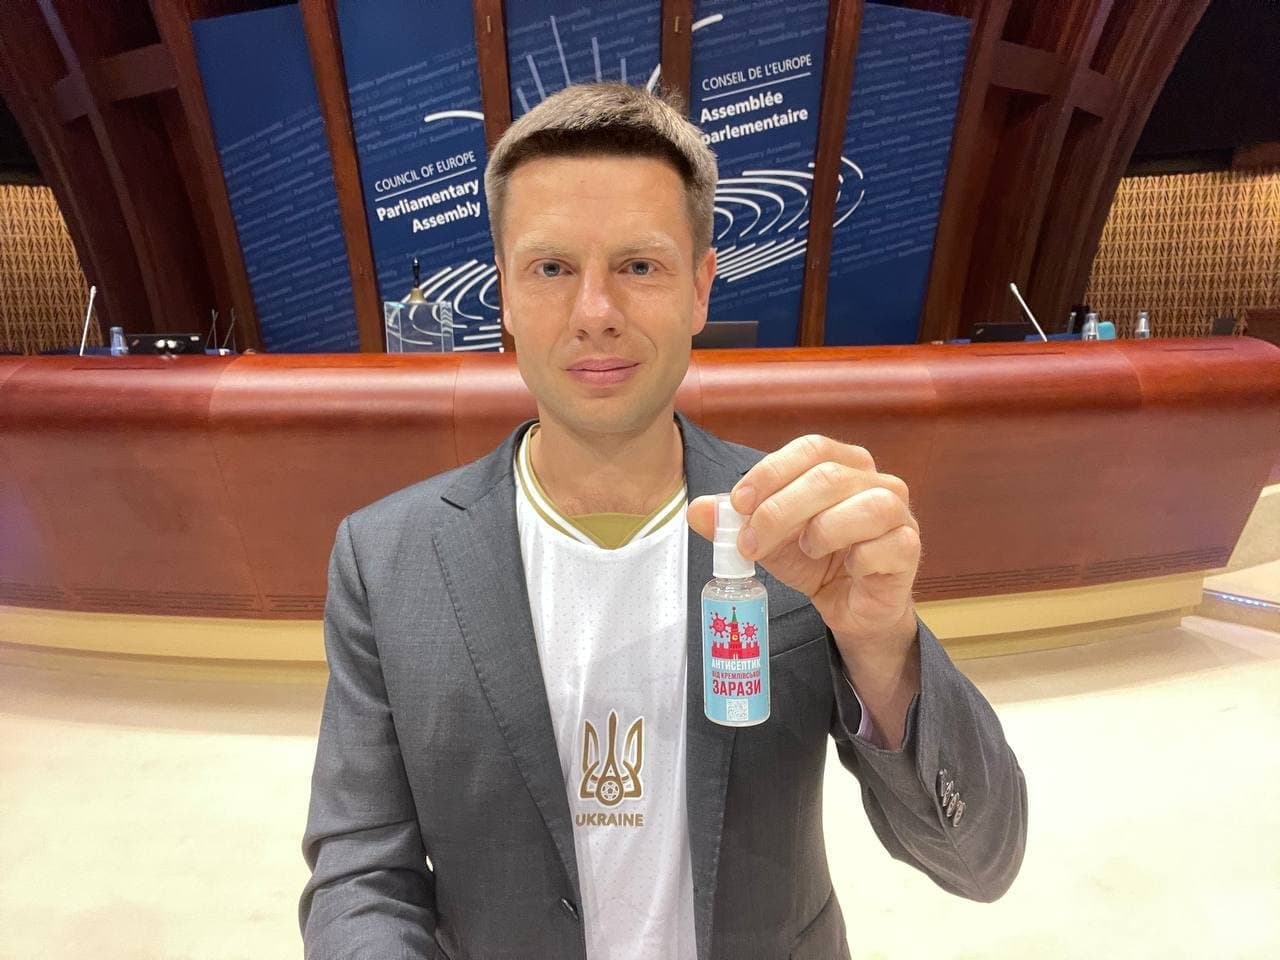 Фото с антисептиком, «покатушки» у посольства России и футболка для Толстого: чем Гончаренко всю неделю занимался в ПАСЕ